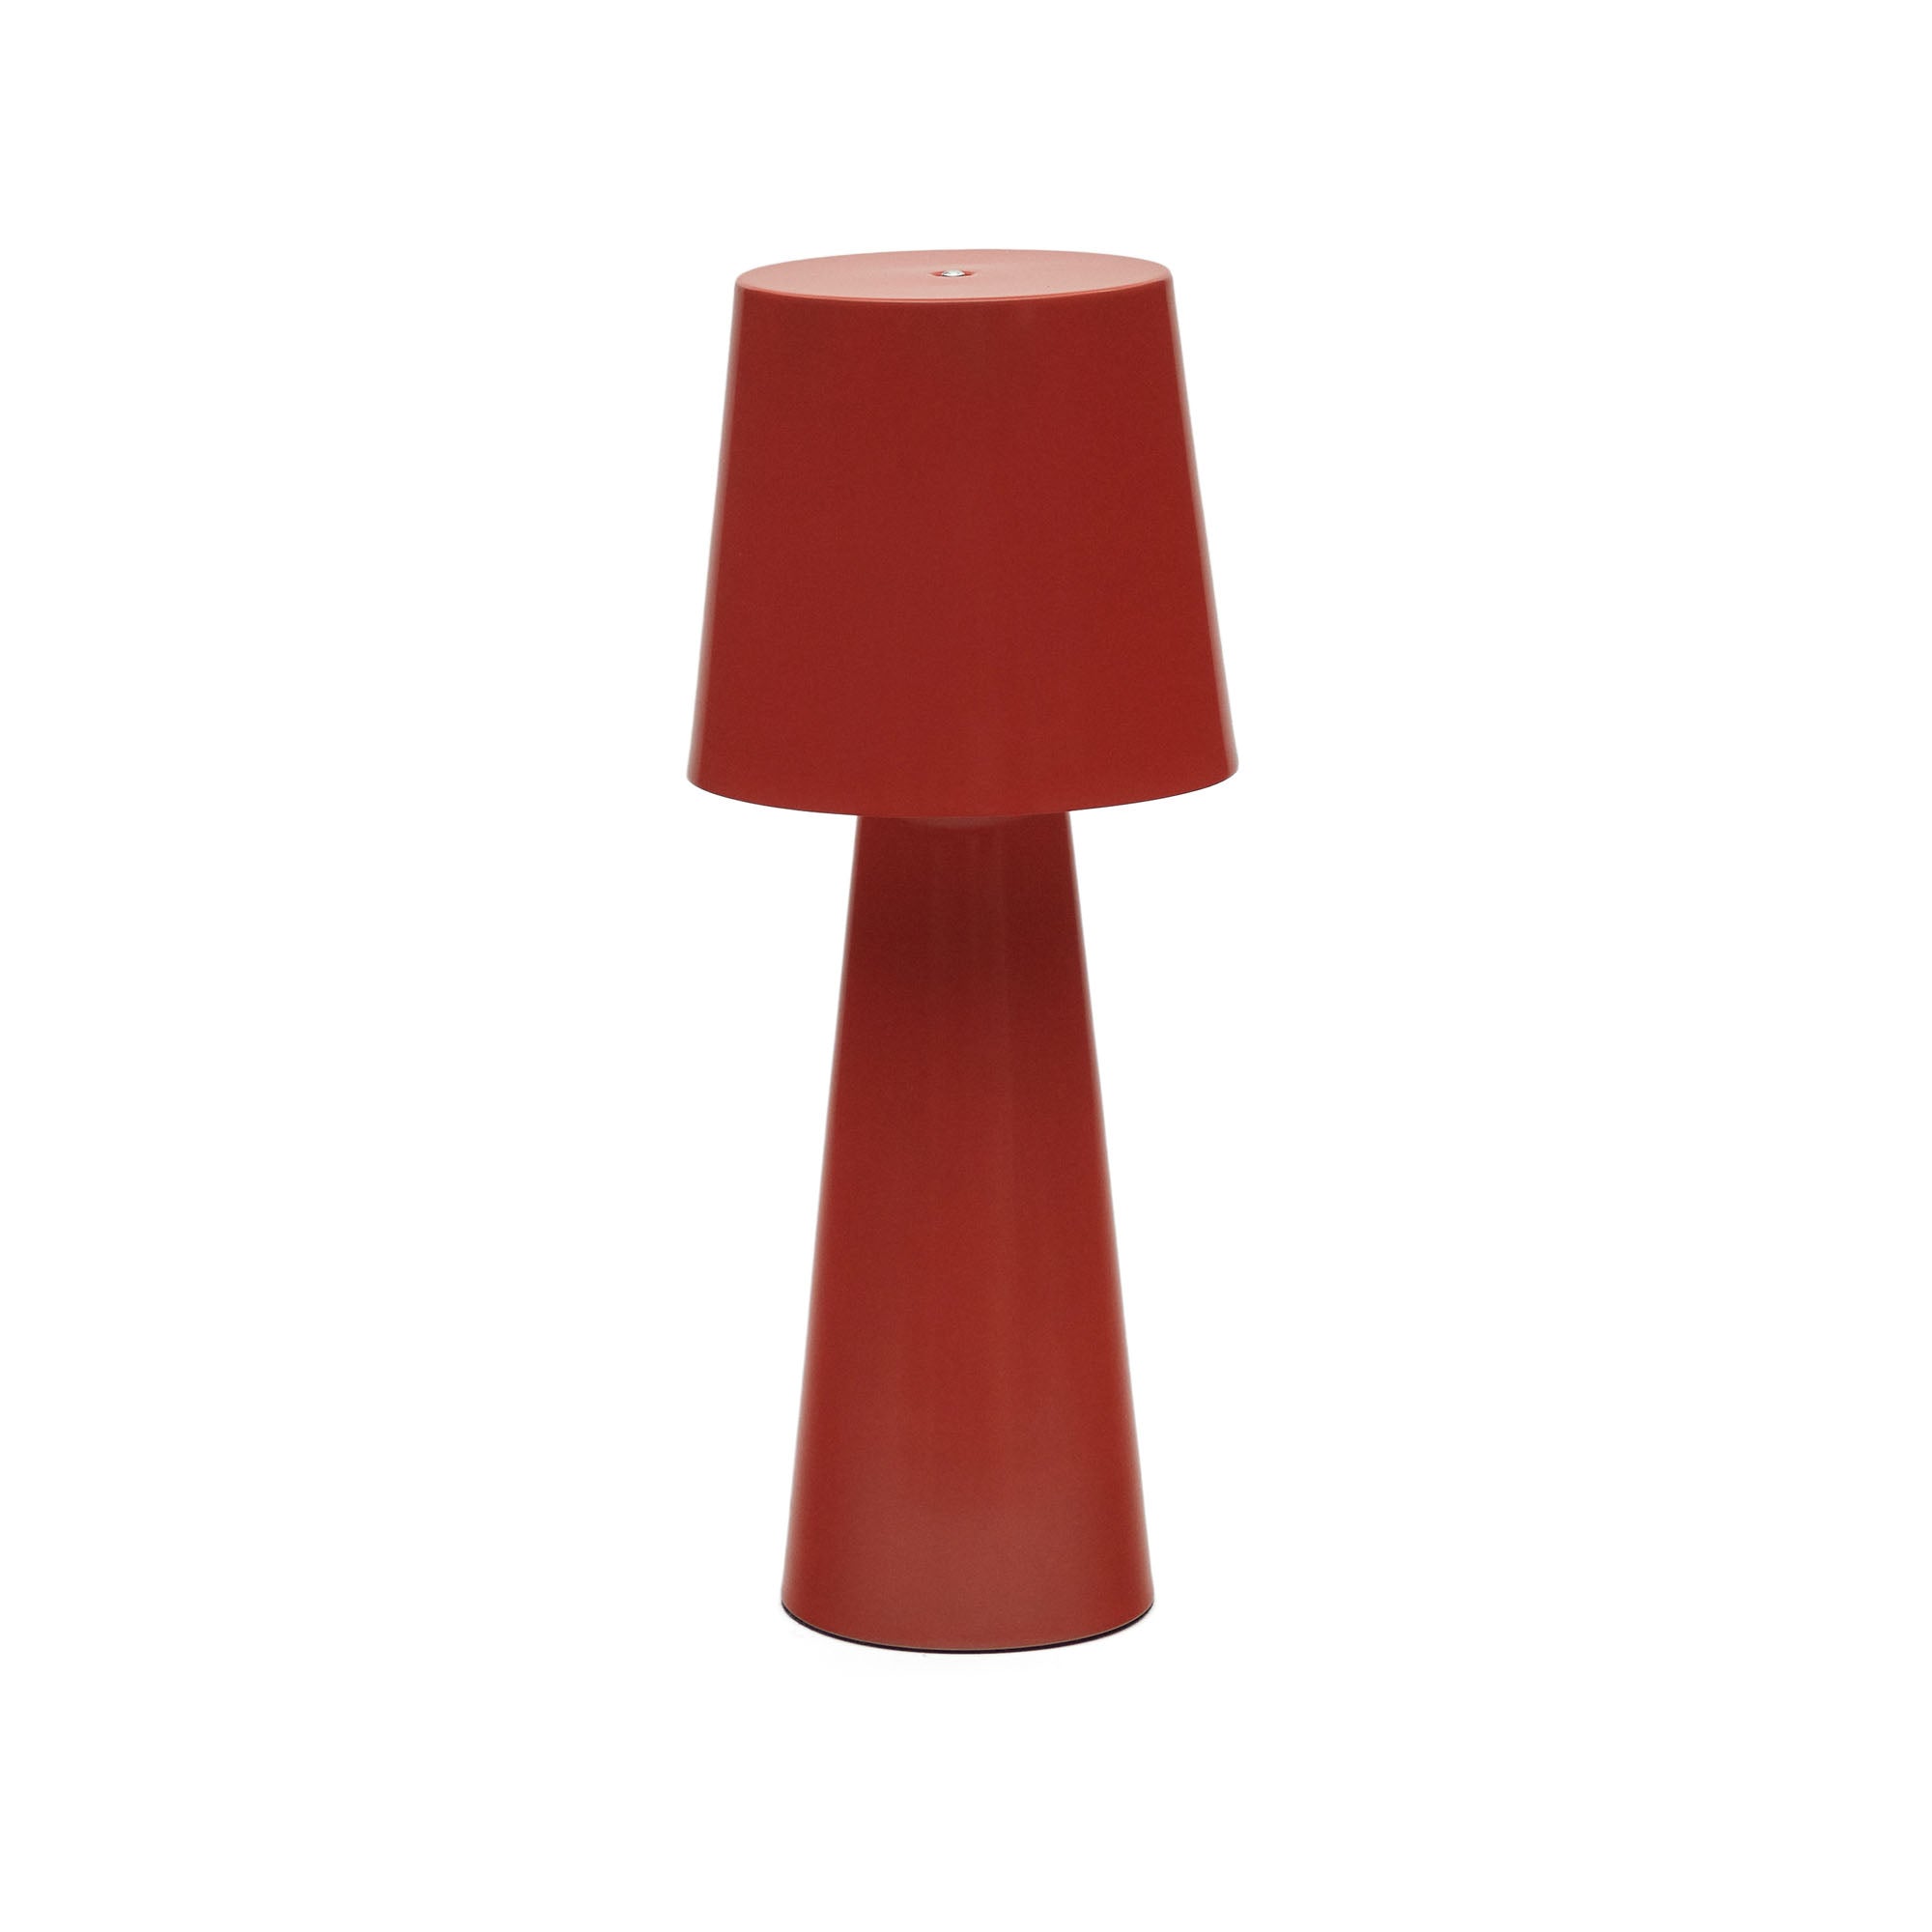 Arenys nagyméretű asztali lámpa piros festett kivitelben